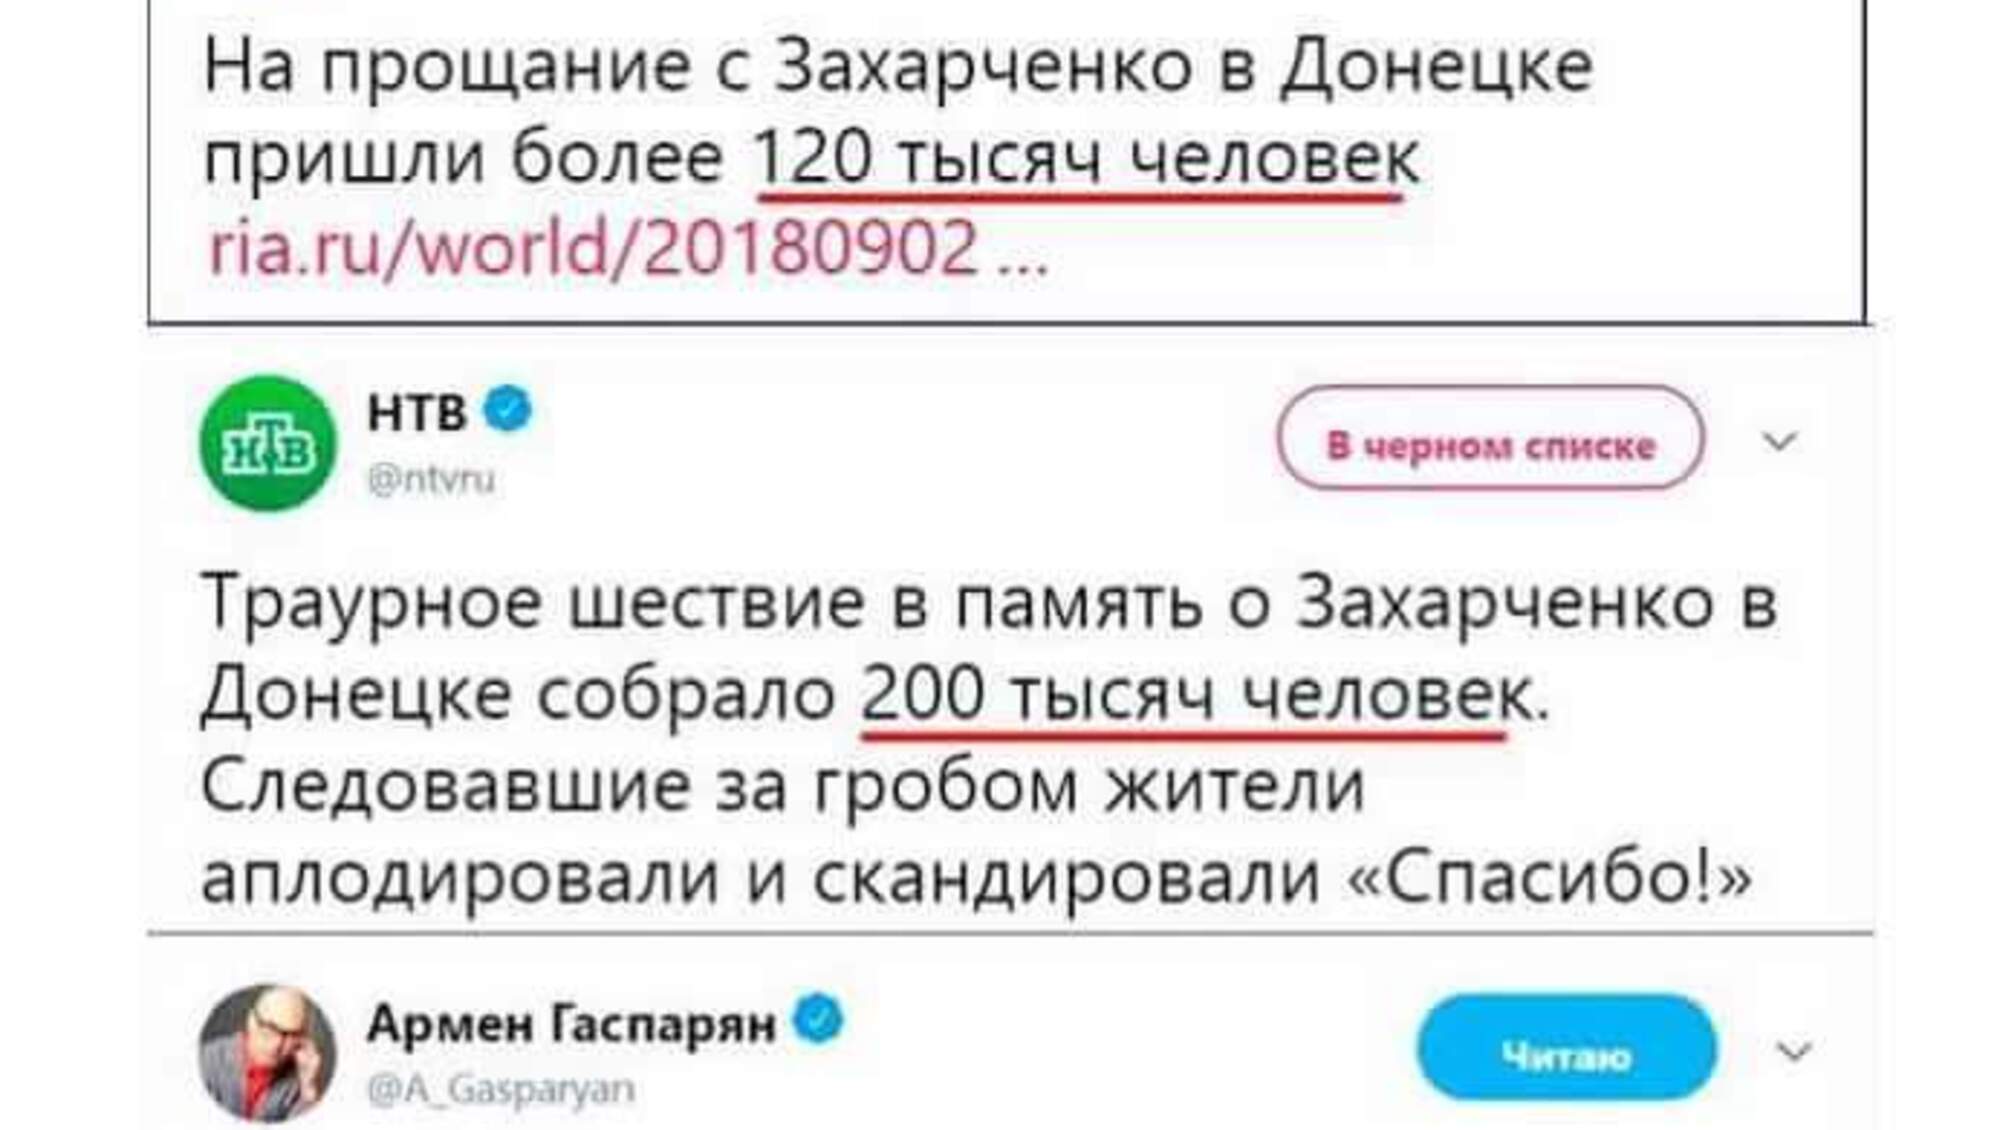 'Поздравляю вас, гражданин, соврамши' - російські ЗМІ нарахували на похоронах Захарченка 200 мільйонів відвідувачів